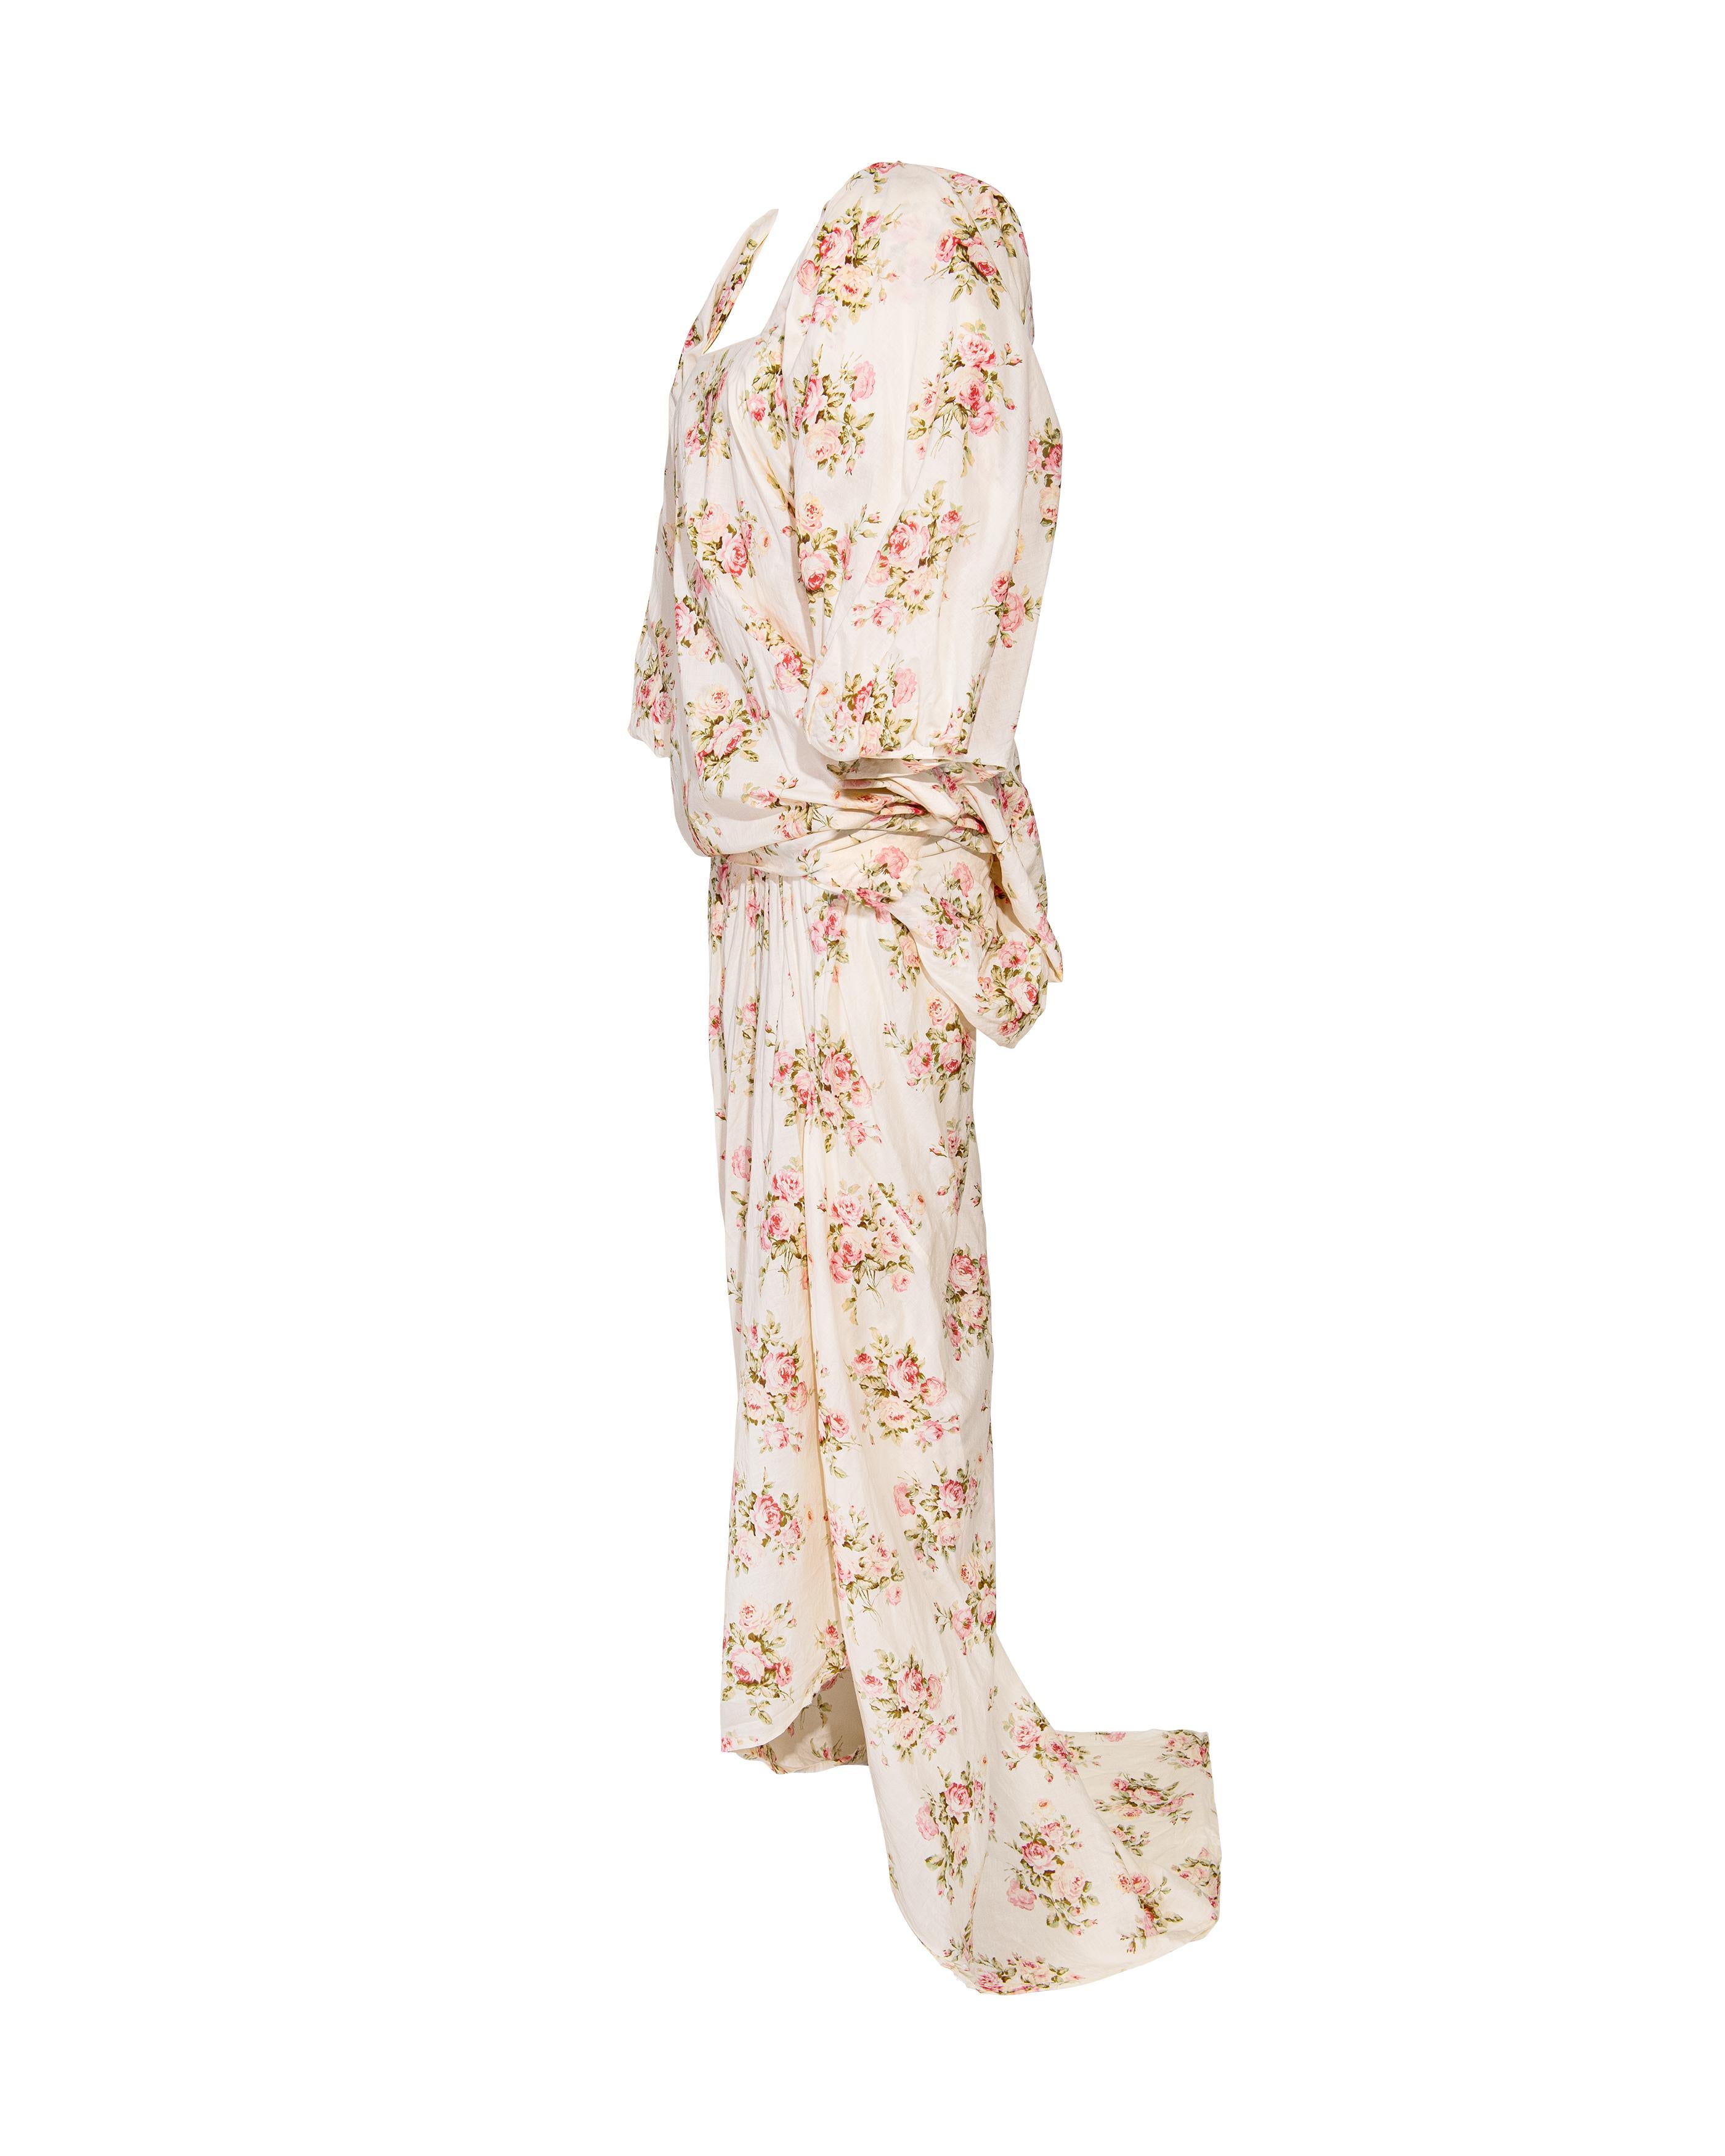 F/S 2008 Junya Watanabe Ecrufarbenes Baumwollkleid mit rosa Blumenmuster Damen im Angebot